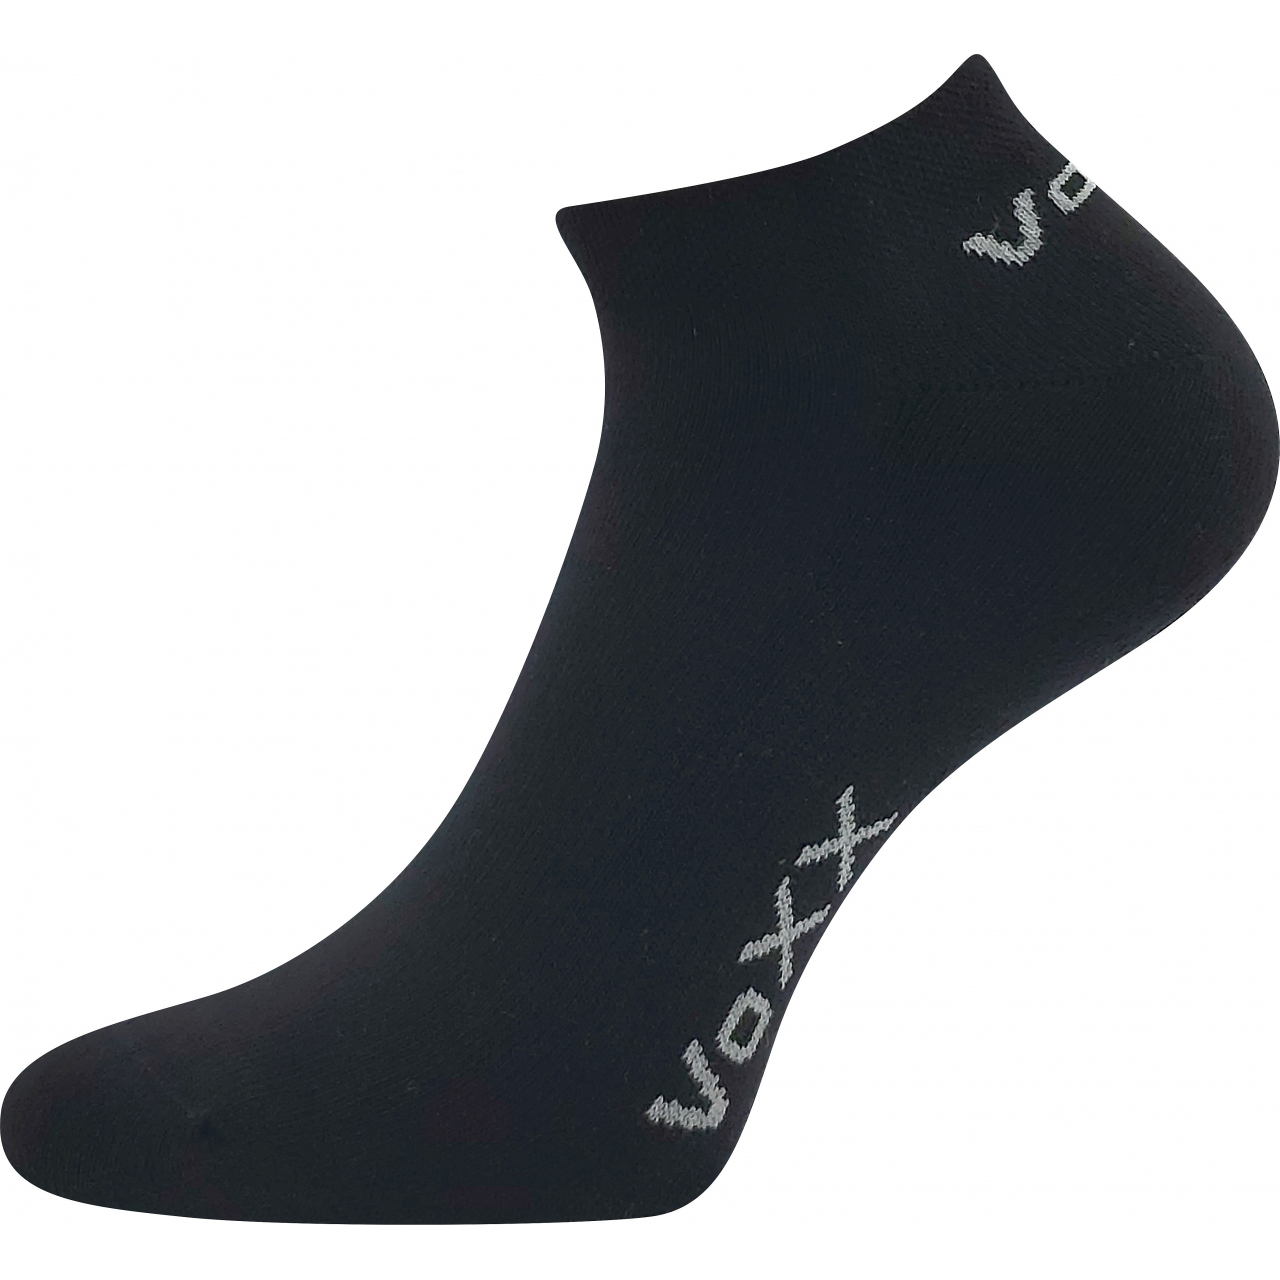 Ponožky snížené Voxx Basic - černé, 43-46